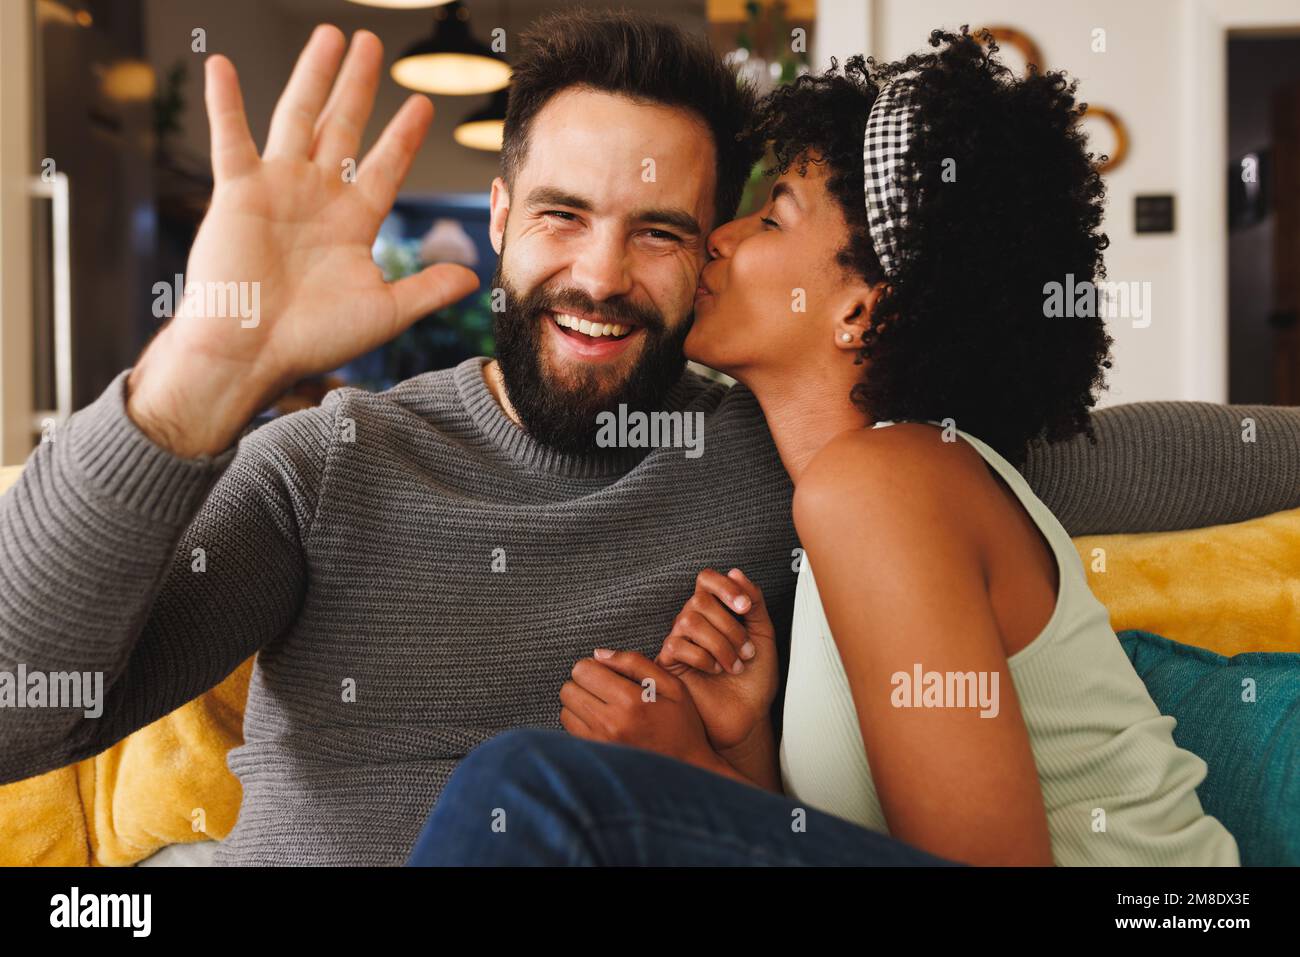 Heureux biracial barbu homme en agitant la main et petite amie l'embrassant sur la joue tout en se relaxant sur le canapé Banque D'Images